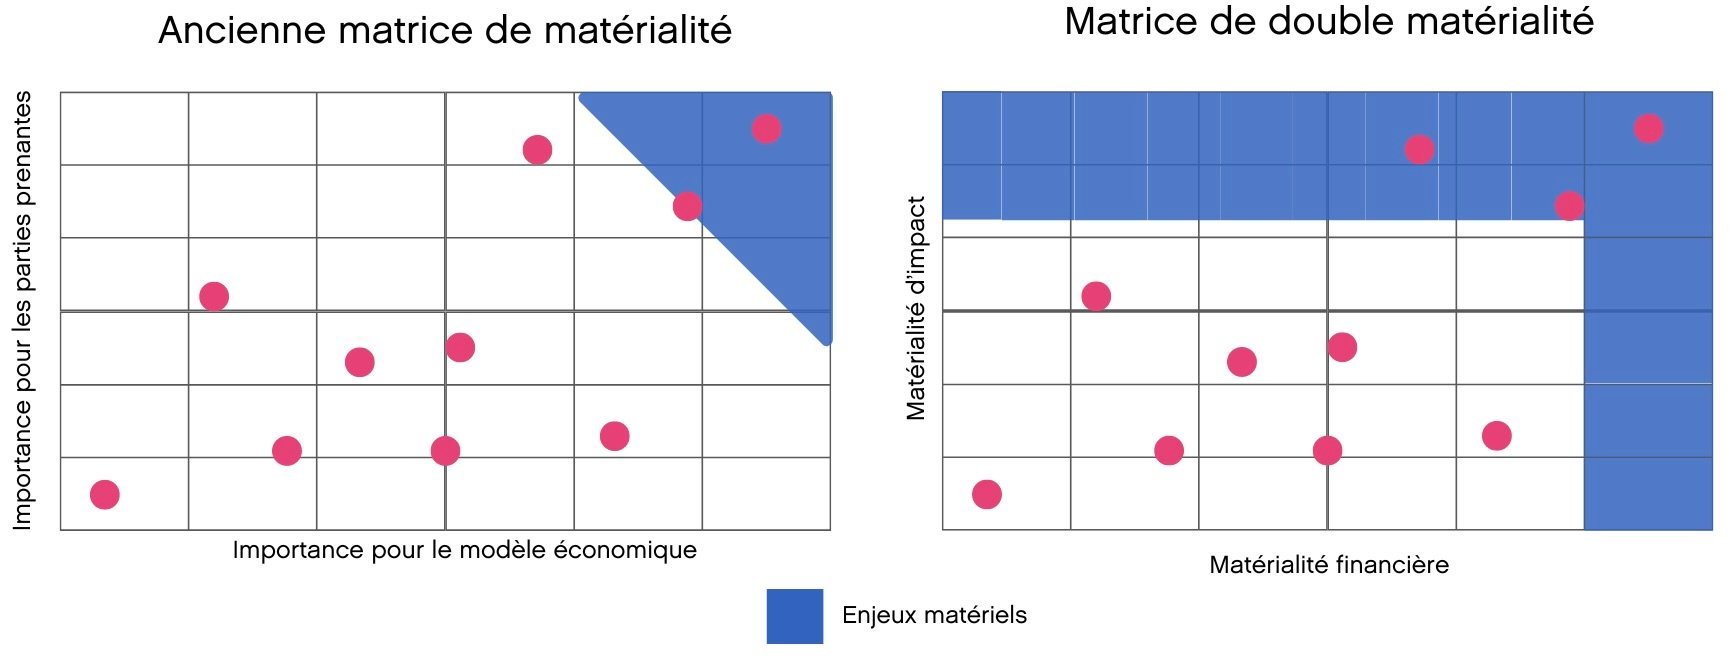 Comparaison des matrices de matérialité